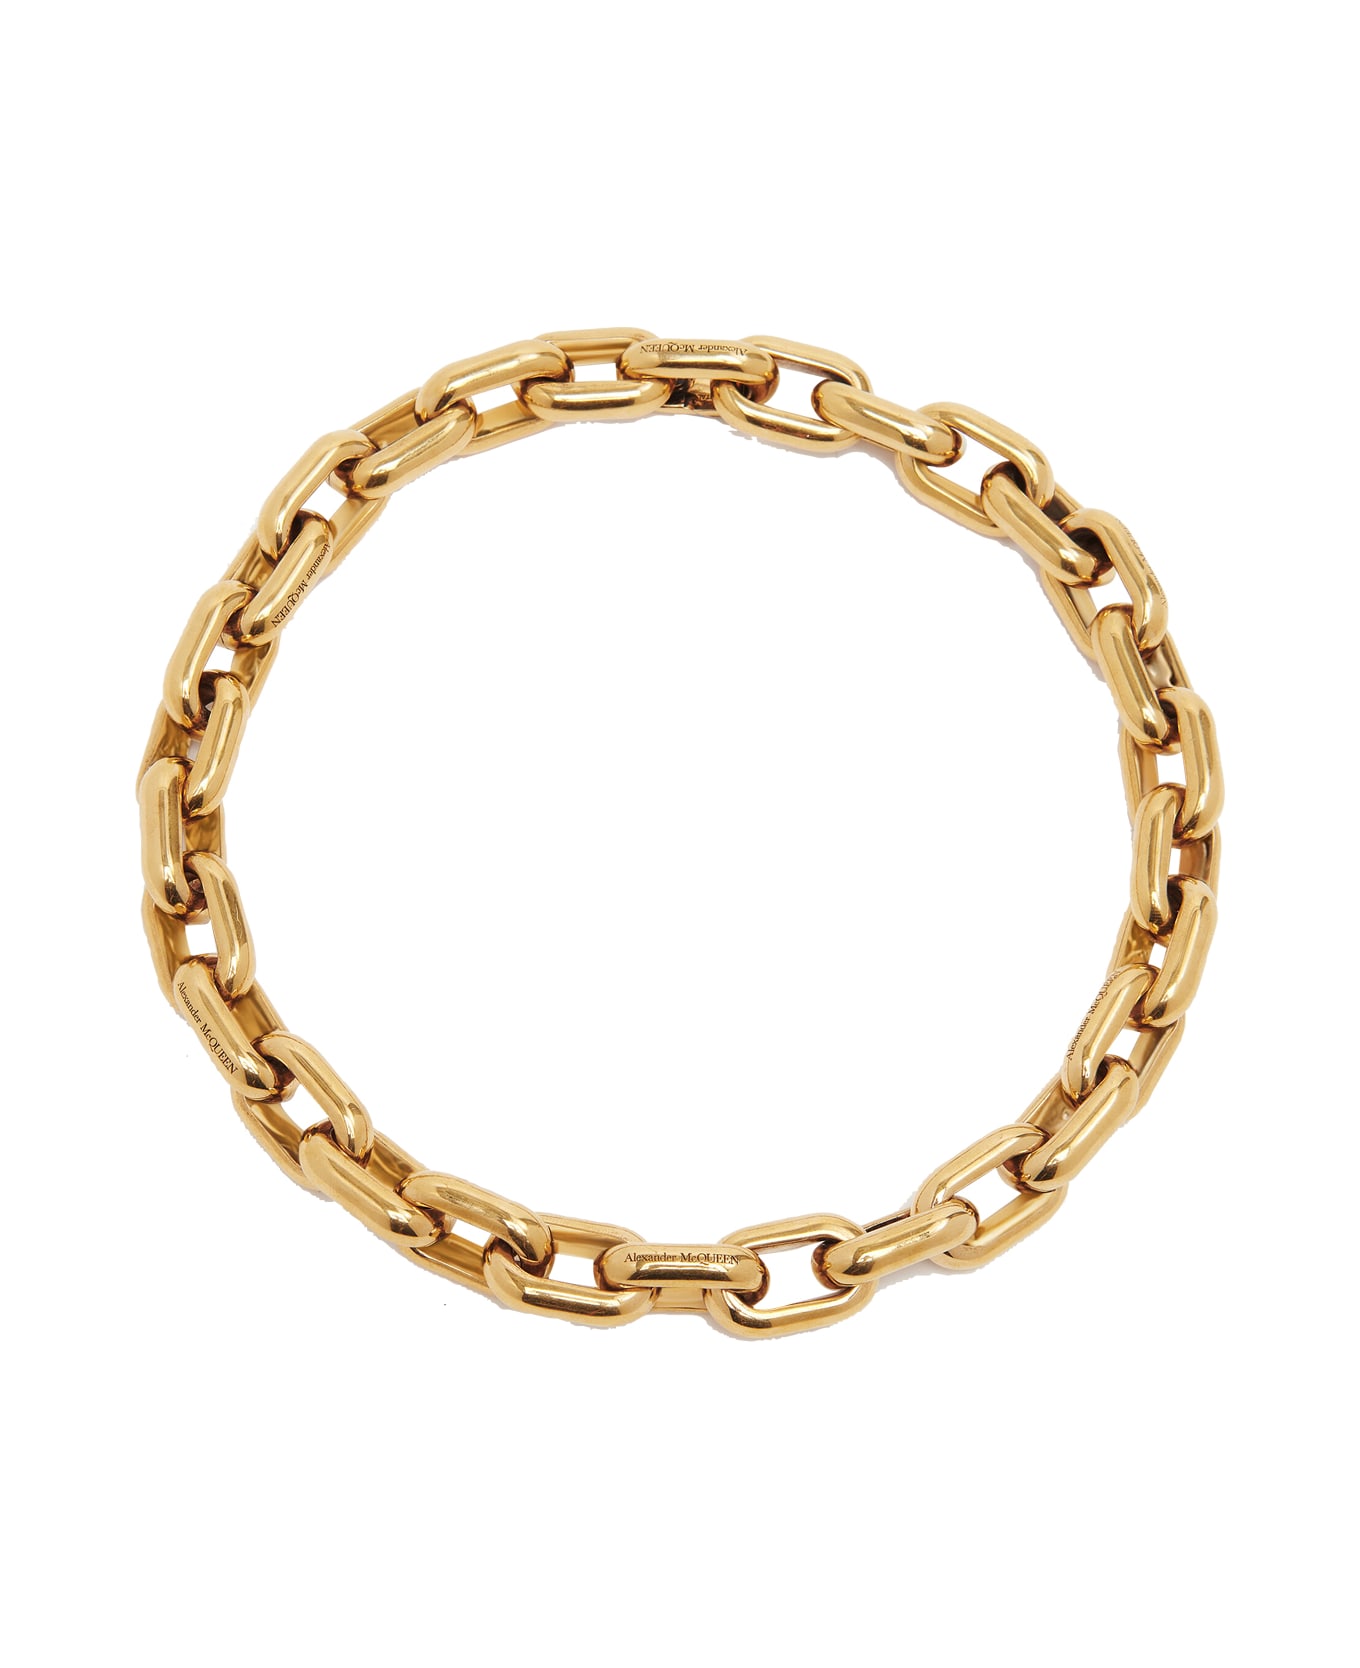 Alexander McQueen Peak Chain Necklace - Golden